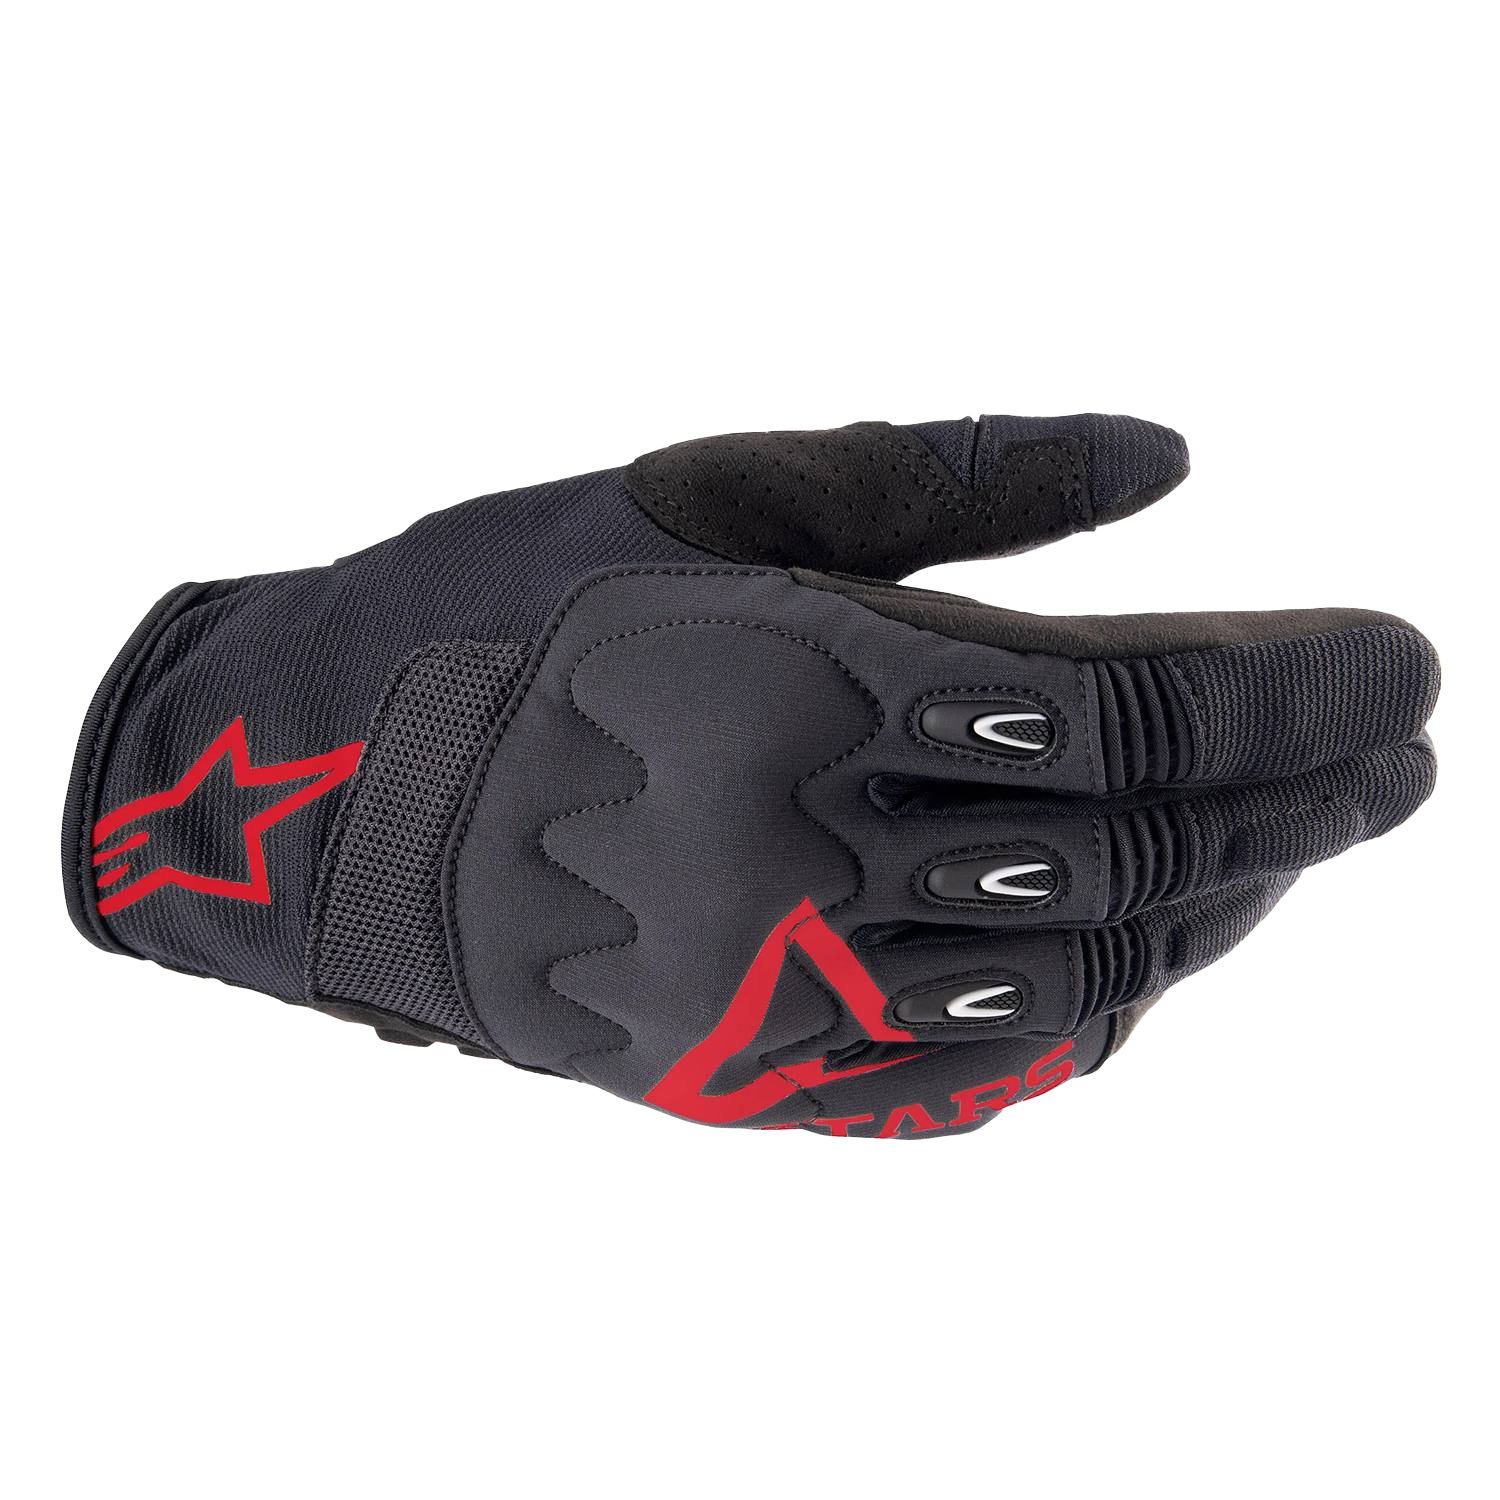 Image of Alpinestars Techdura Gloves Fire Red Black Größe M